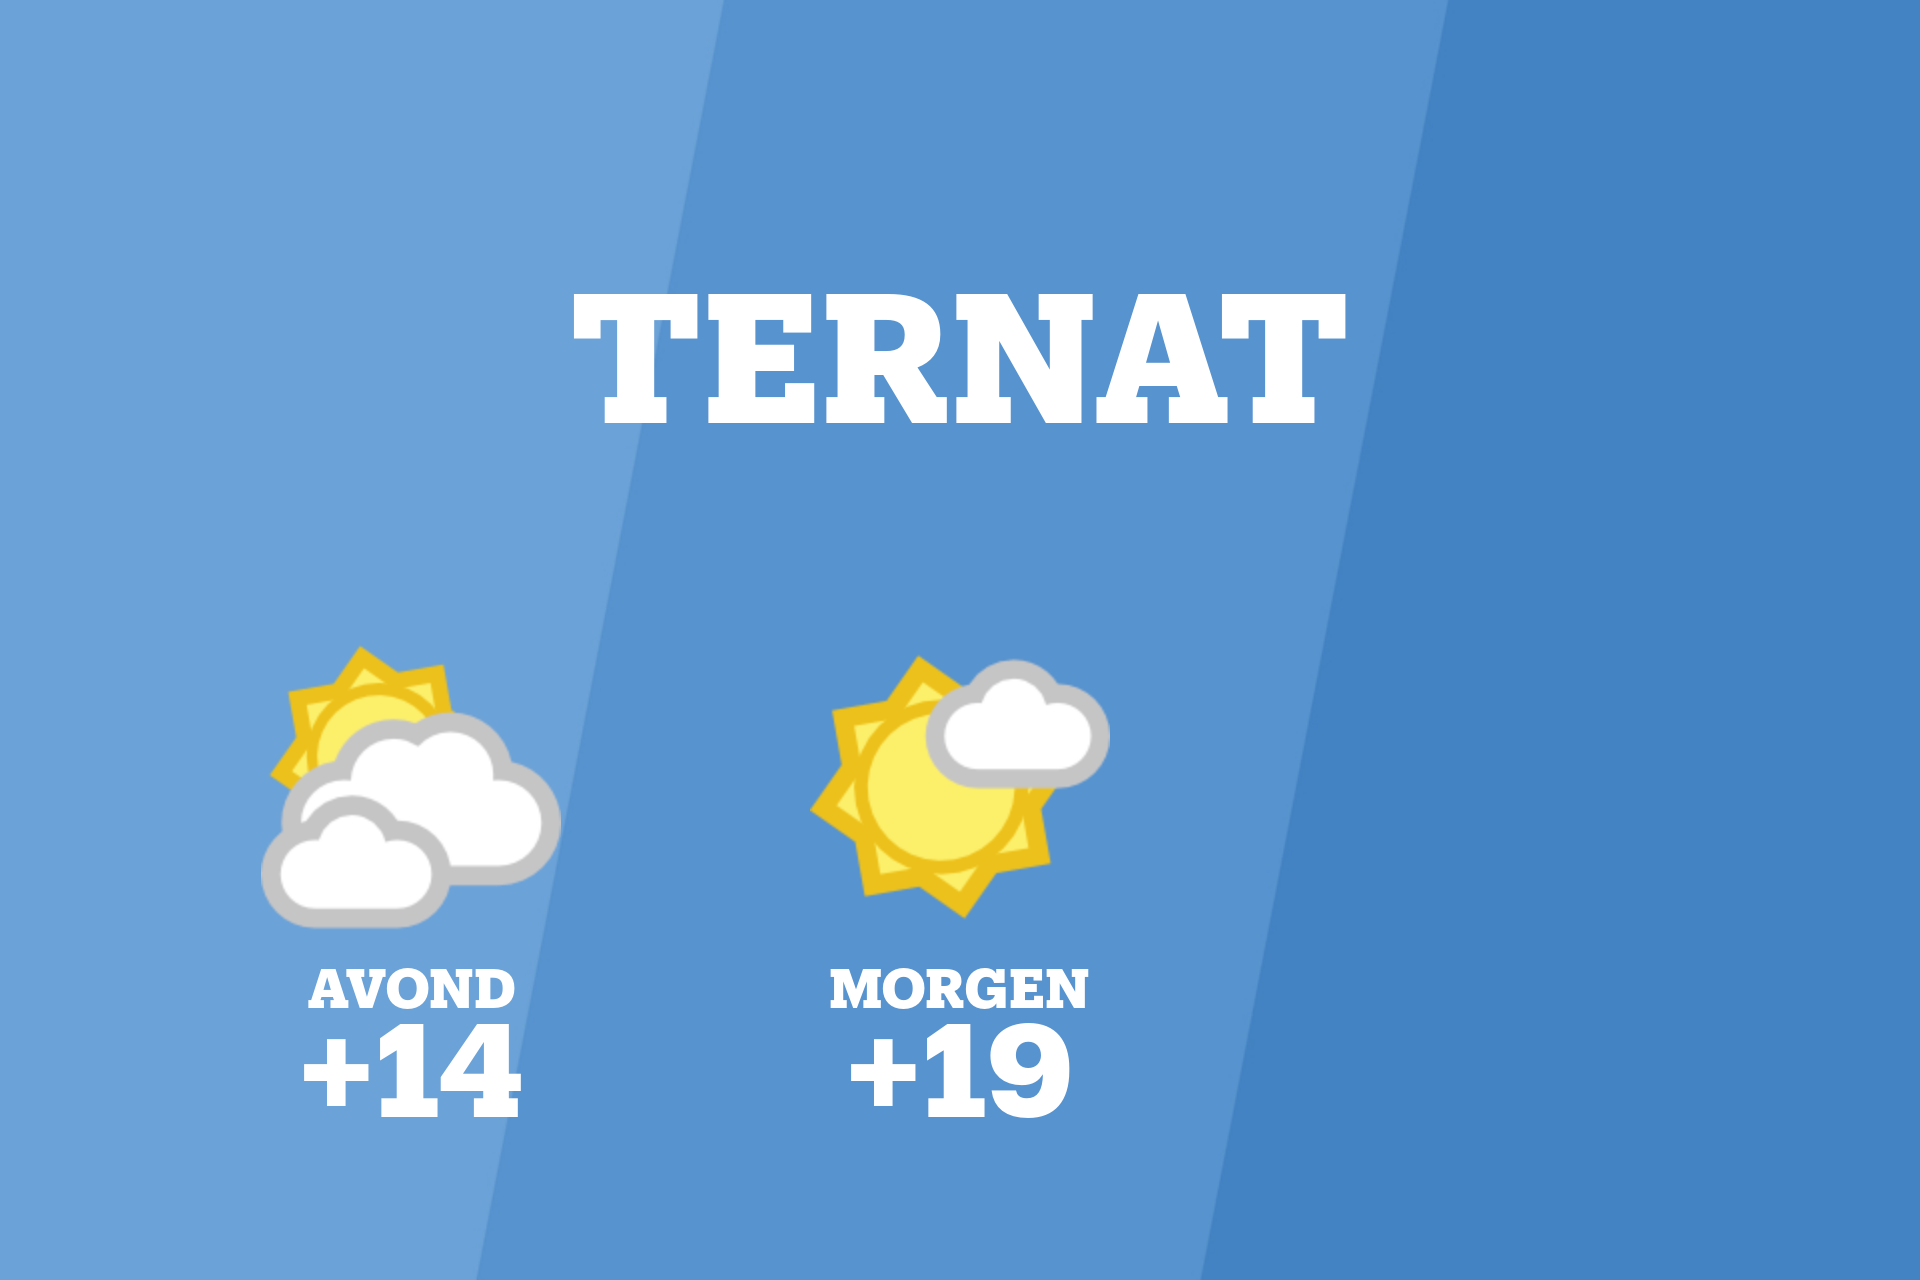 Vanavond kans op bewolkt weer in Ternat